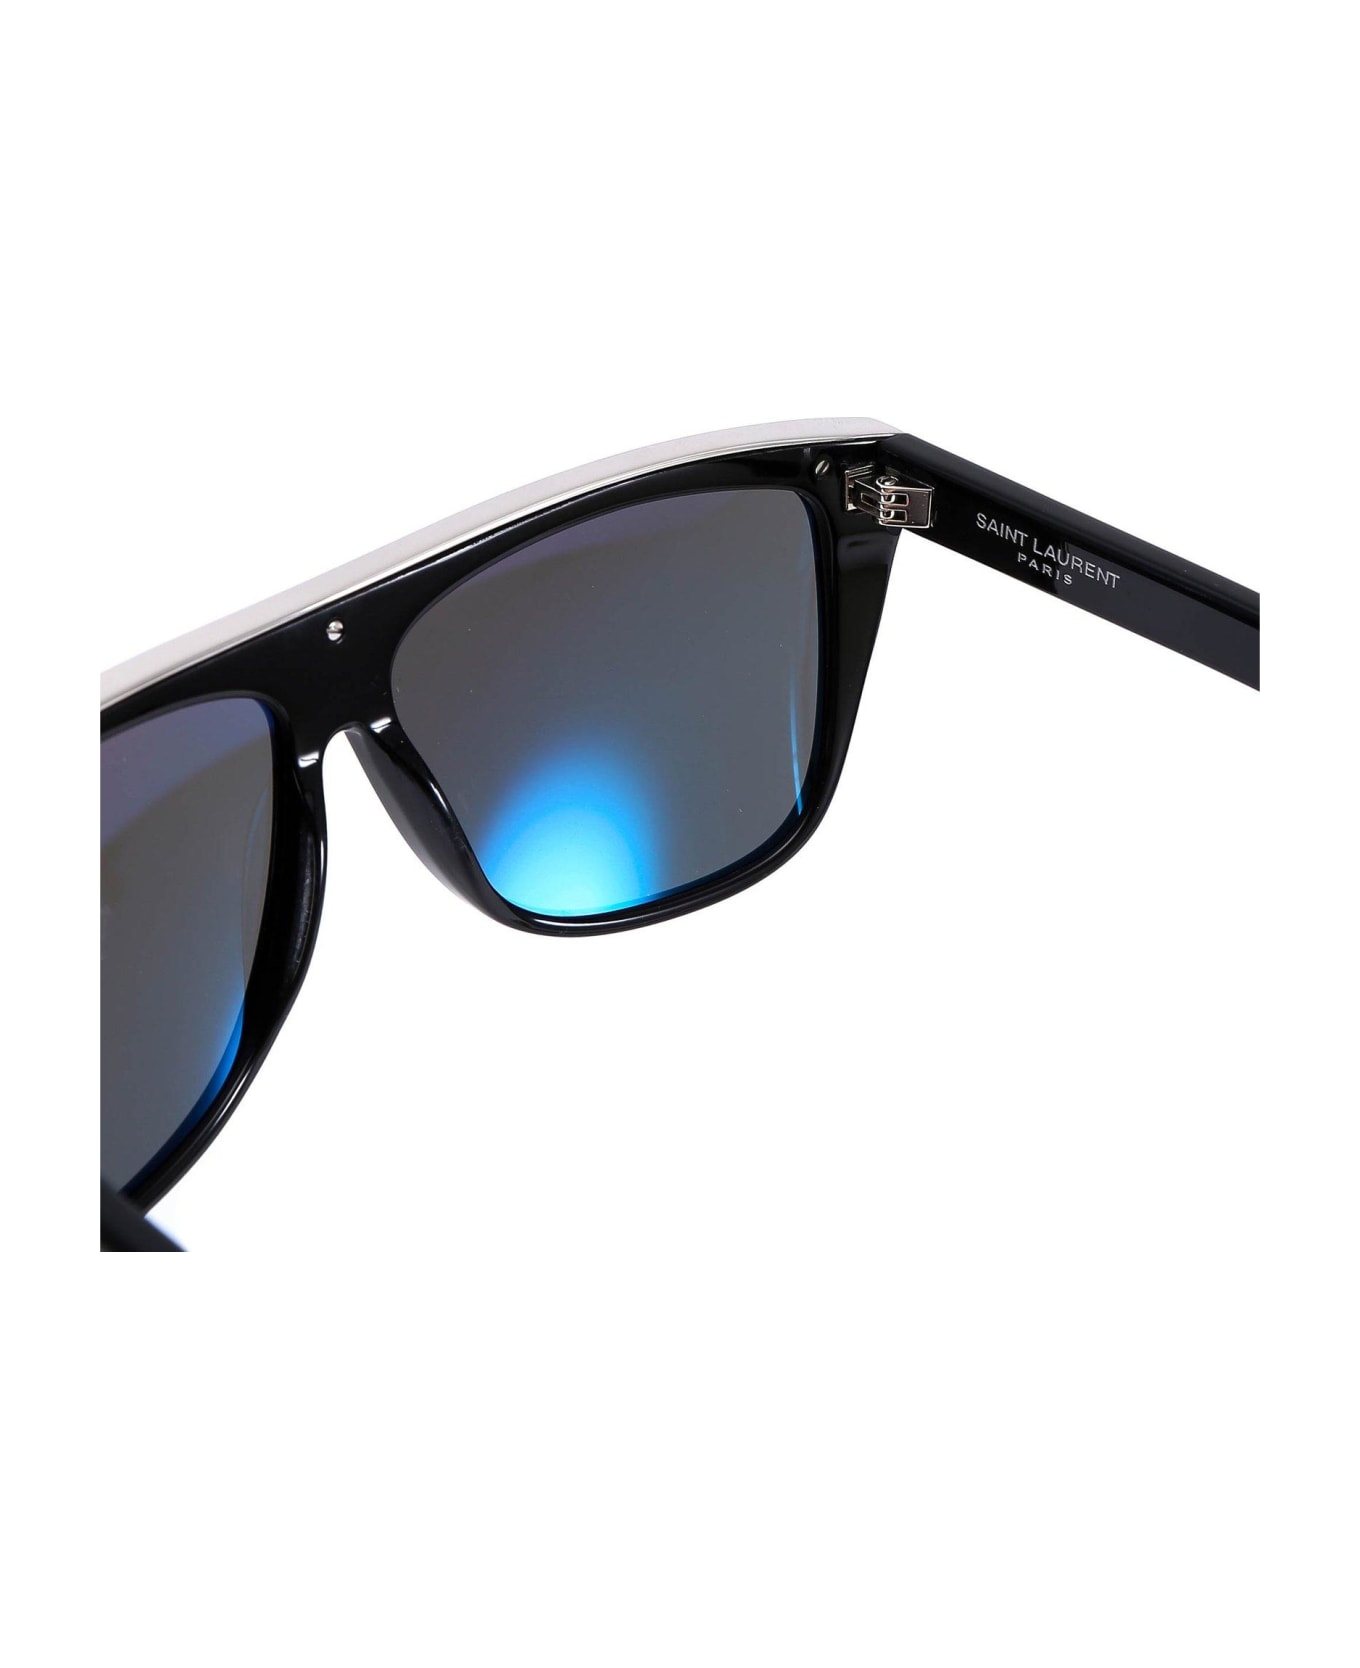 Saint Laurent 137 Devon Square Frame Sunglasses - Nero e Grigio サングラス